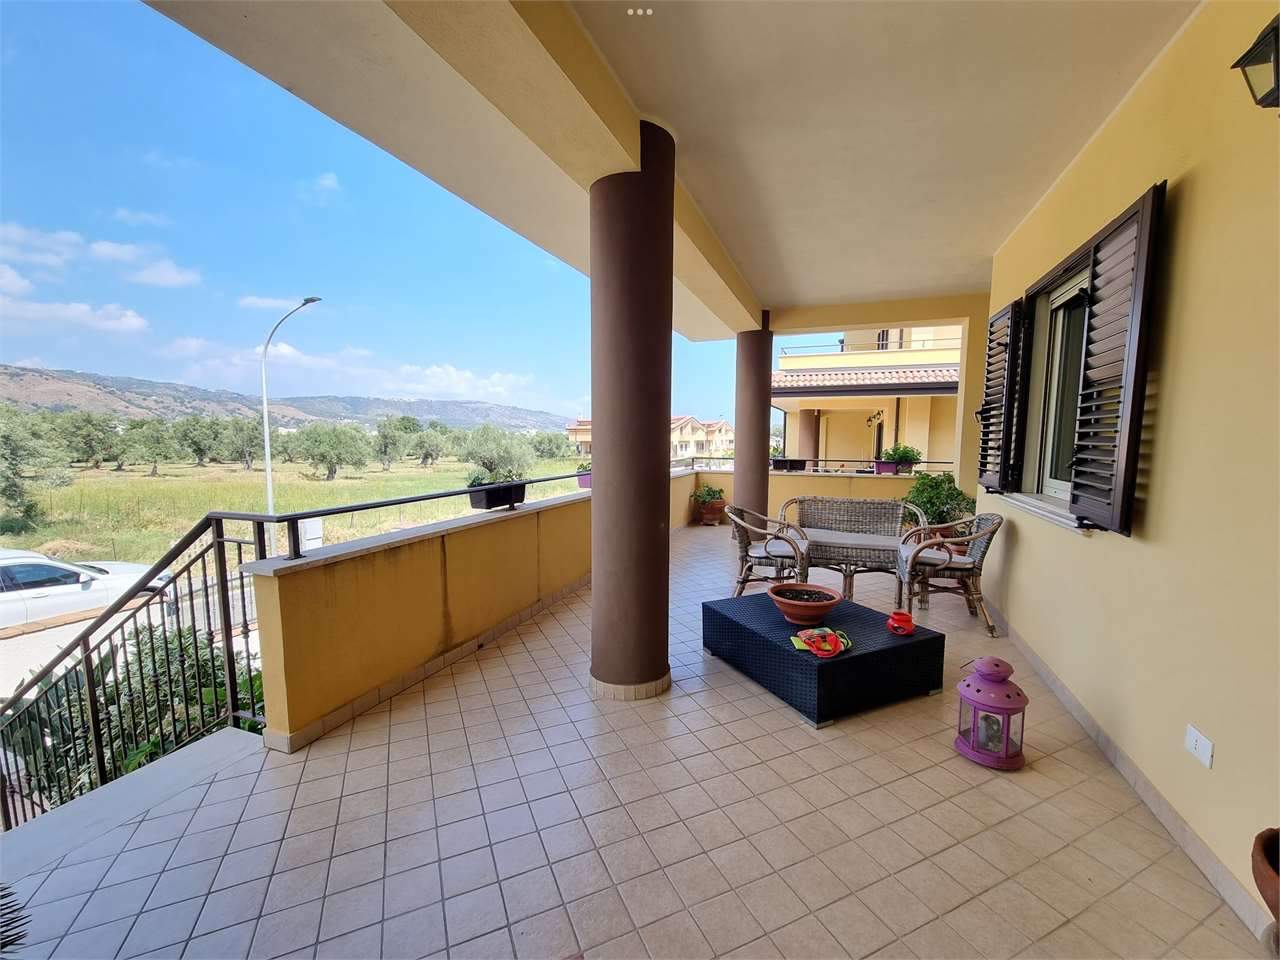 Villa in vendita a Montepaone, 7 locali, prezzo € 300.000 | PortaleAgenzieImmobiliari.it